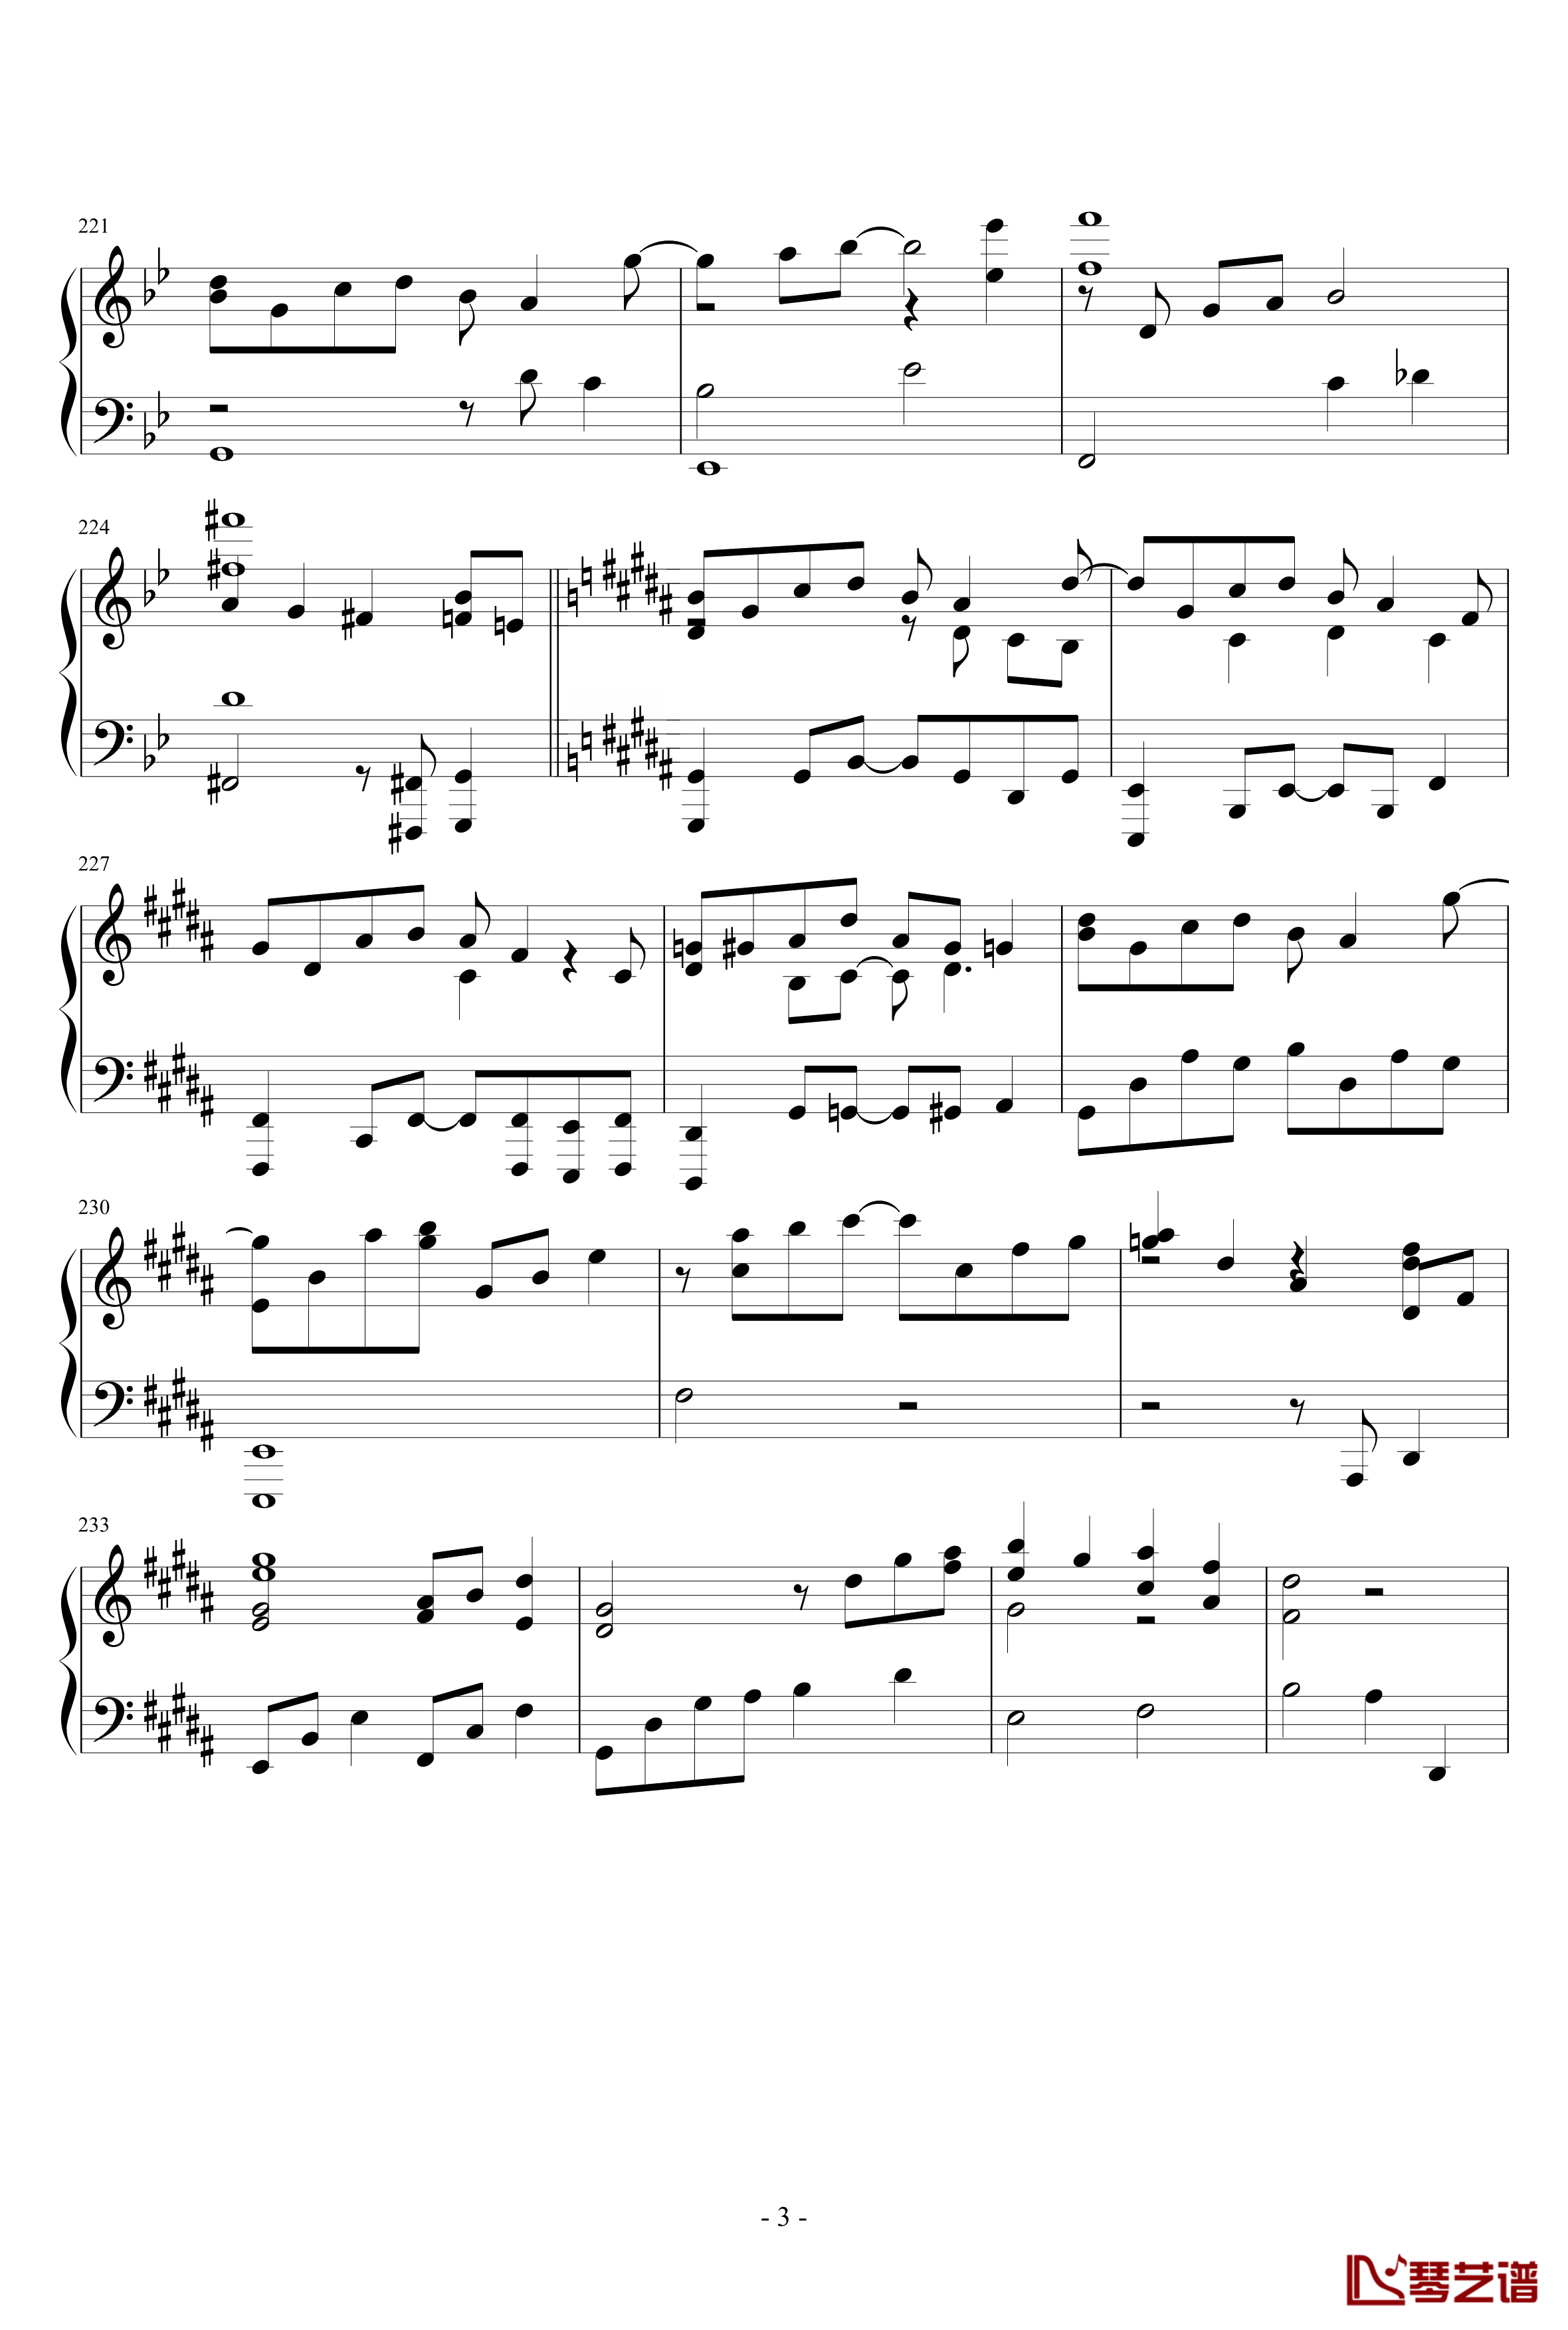 東方連奏曲II Pianoforte钢琴谱-第二部分-东方project3